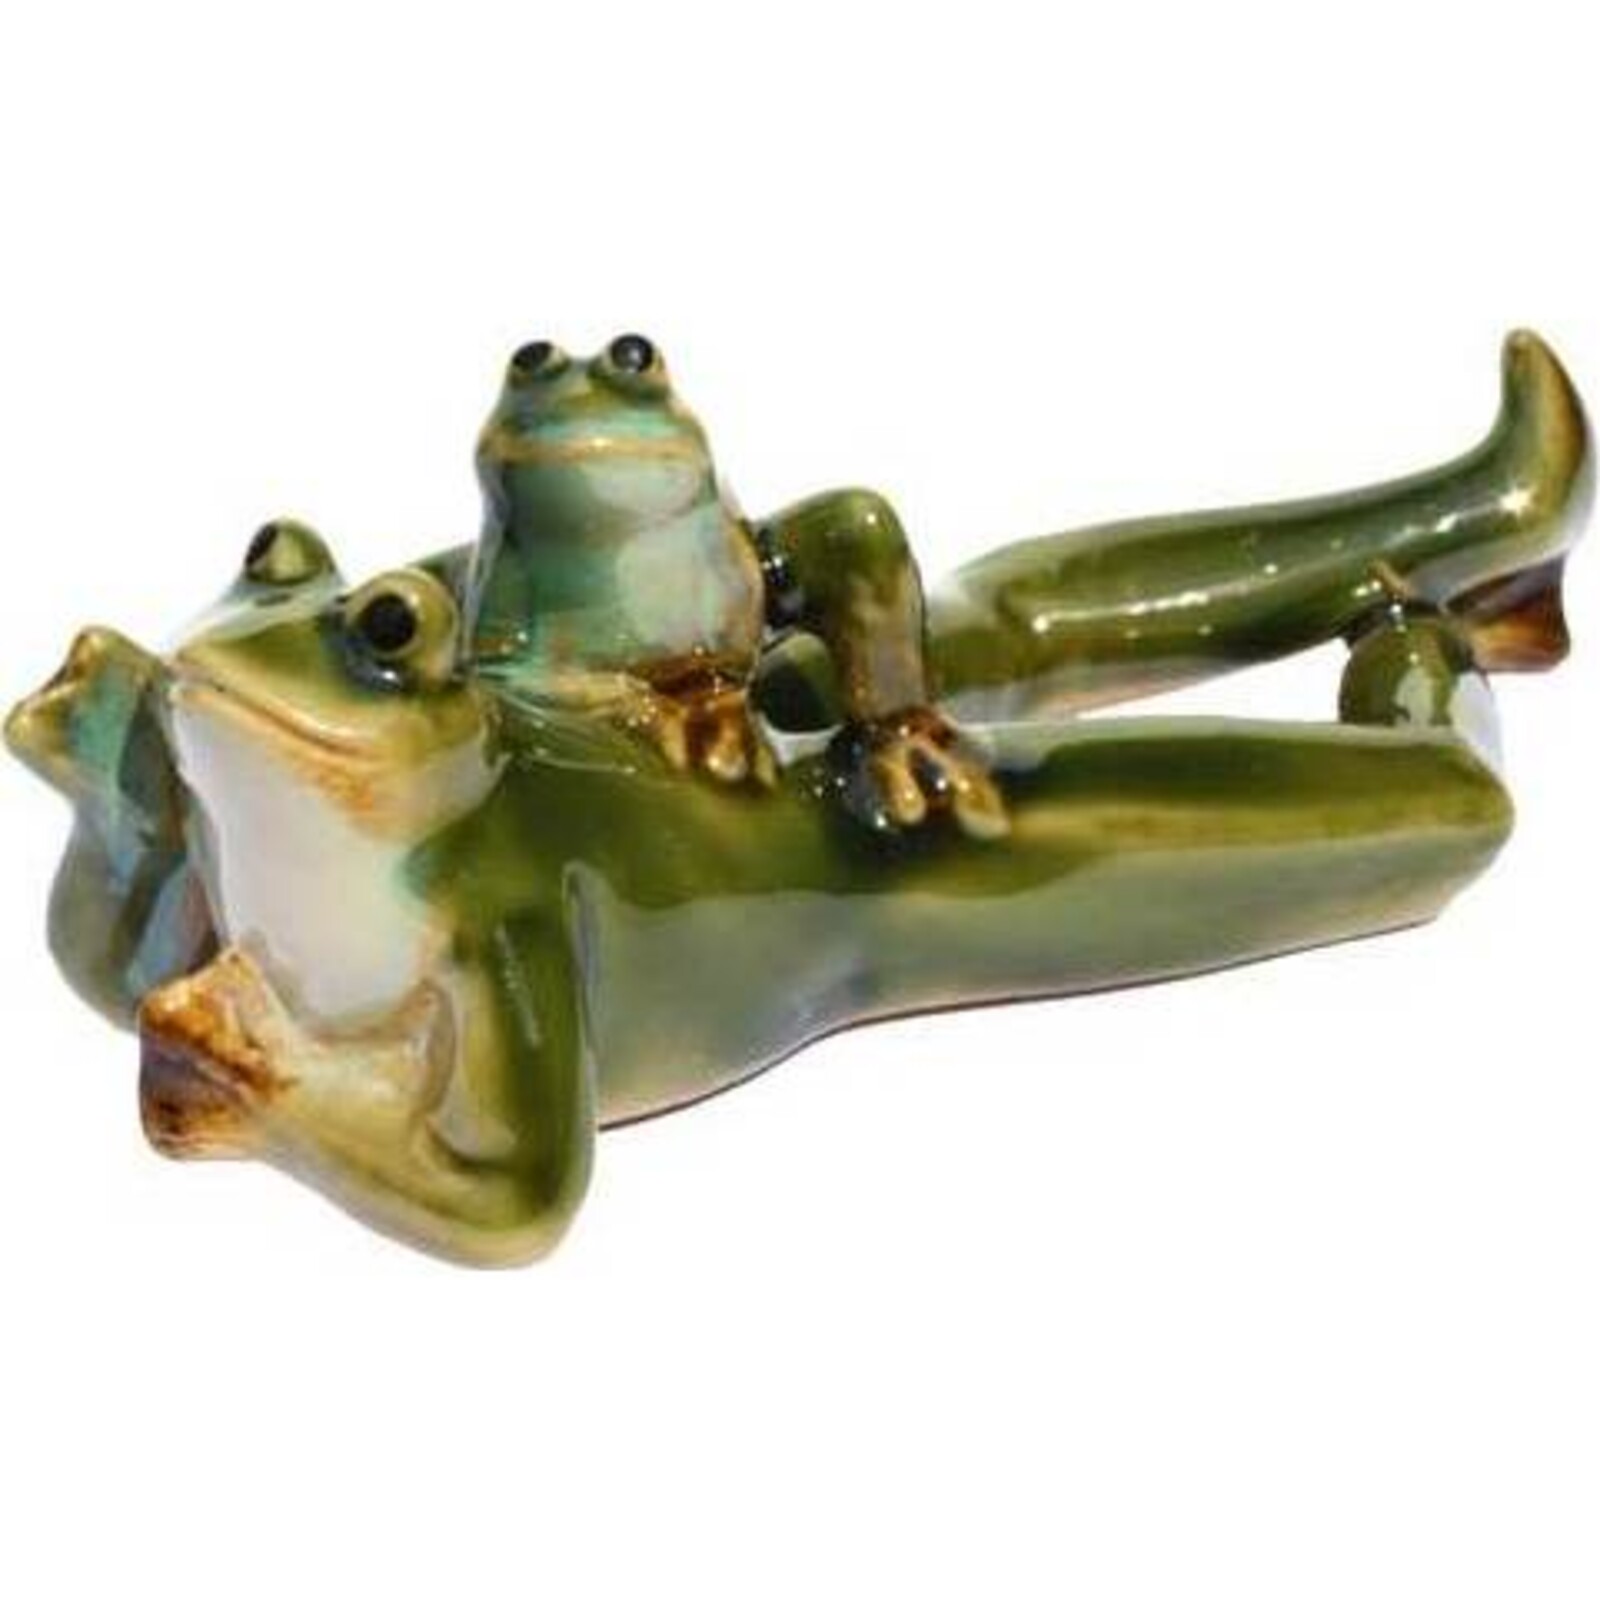 Ceramic Frog - Lying